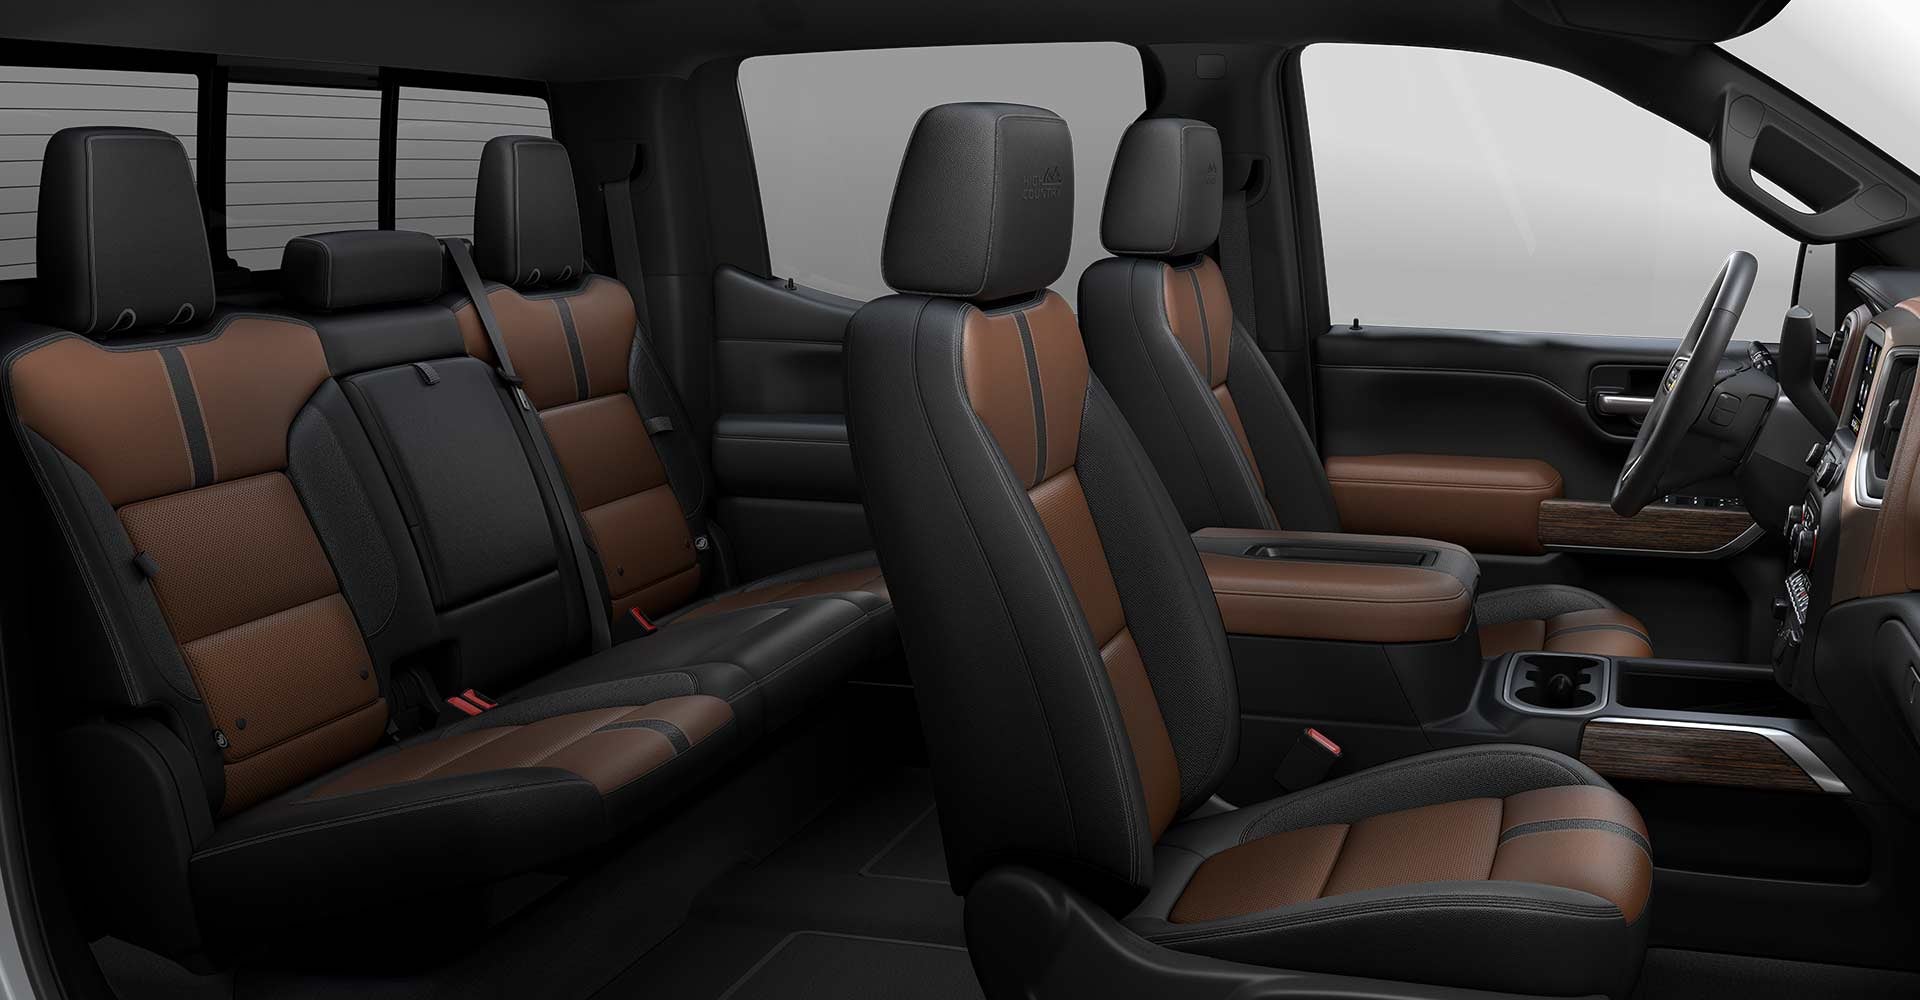 2021 Chevy Silverado 1500 interior